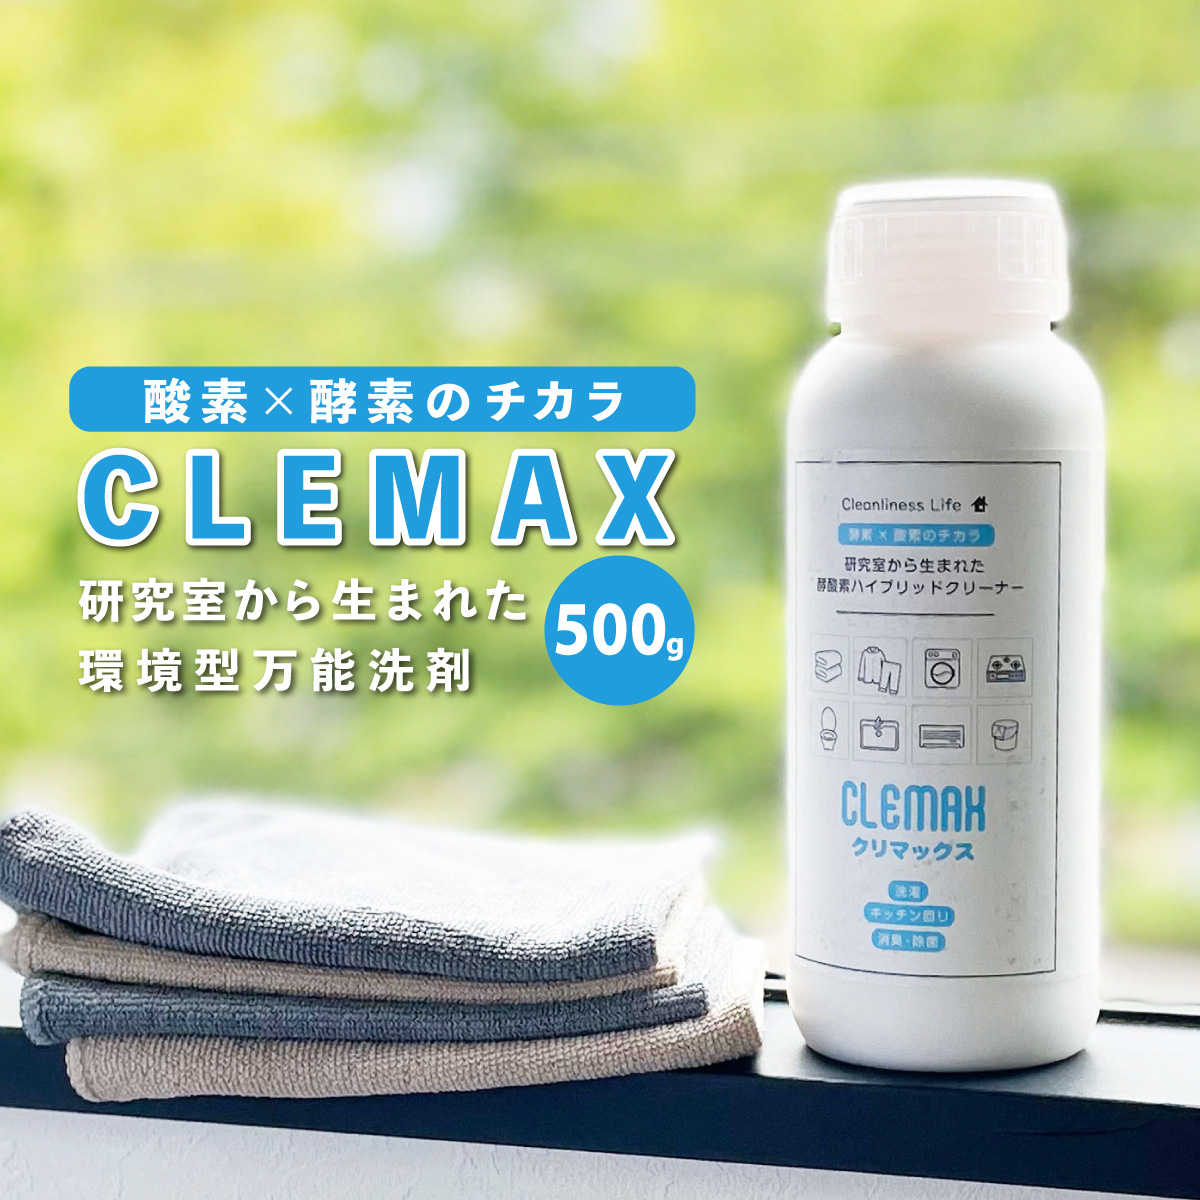 万能洗剤  CLEMAXクリマックス 500g 除菌効力99.9% ハイブリッド洗剤 強力洗浄 除菌 酵素洗剤 ナチュラル洗剤 台所洗剤